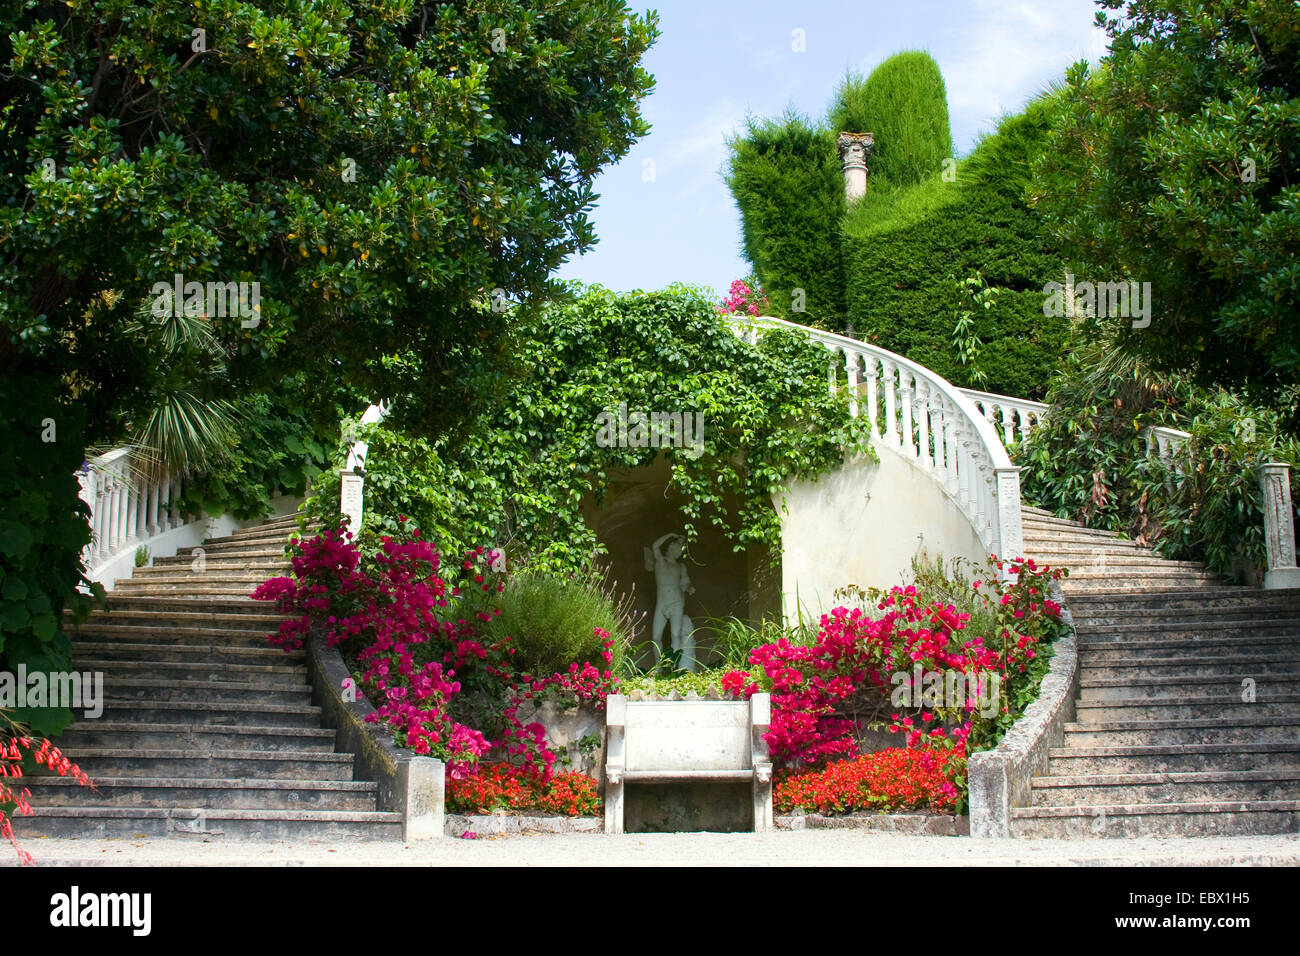 Prétentieux, fall Villa Ephrussi de Rothschild, France, Villefranche-sur-Mer Banque D'Images